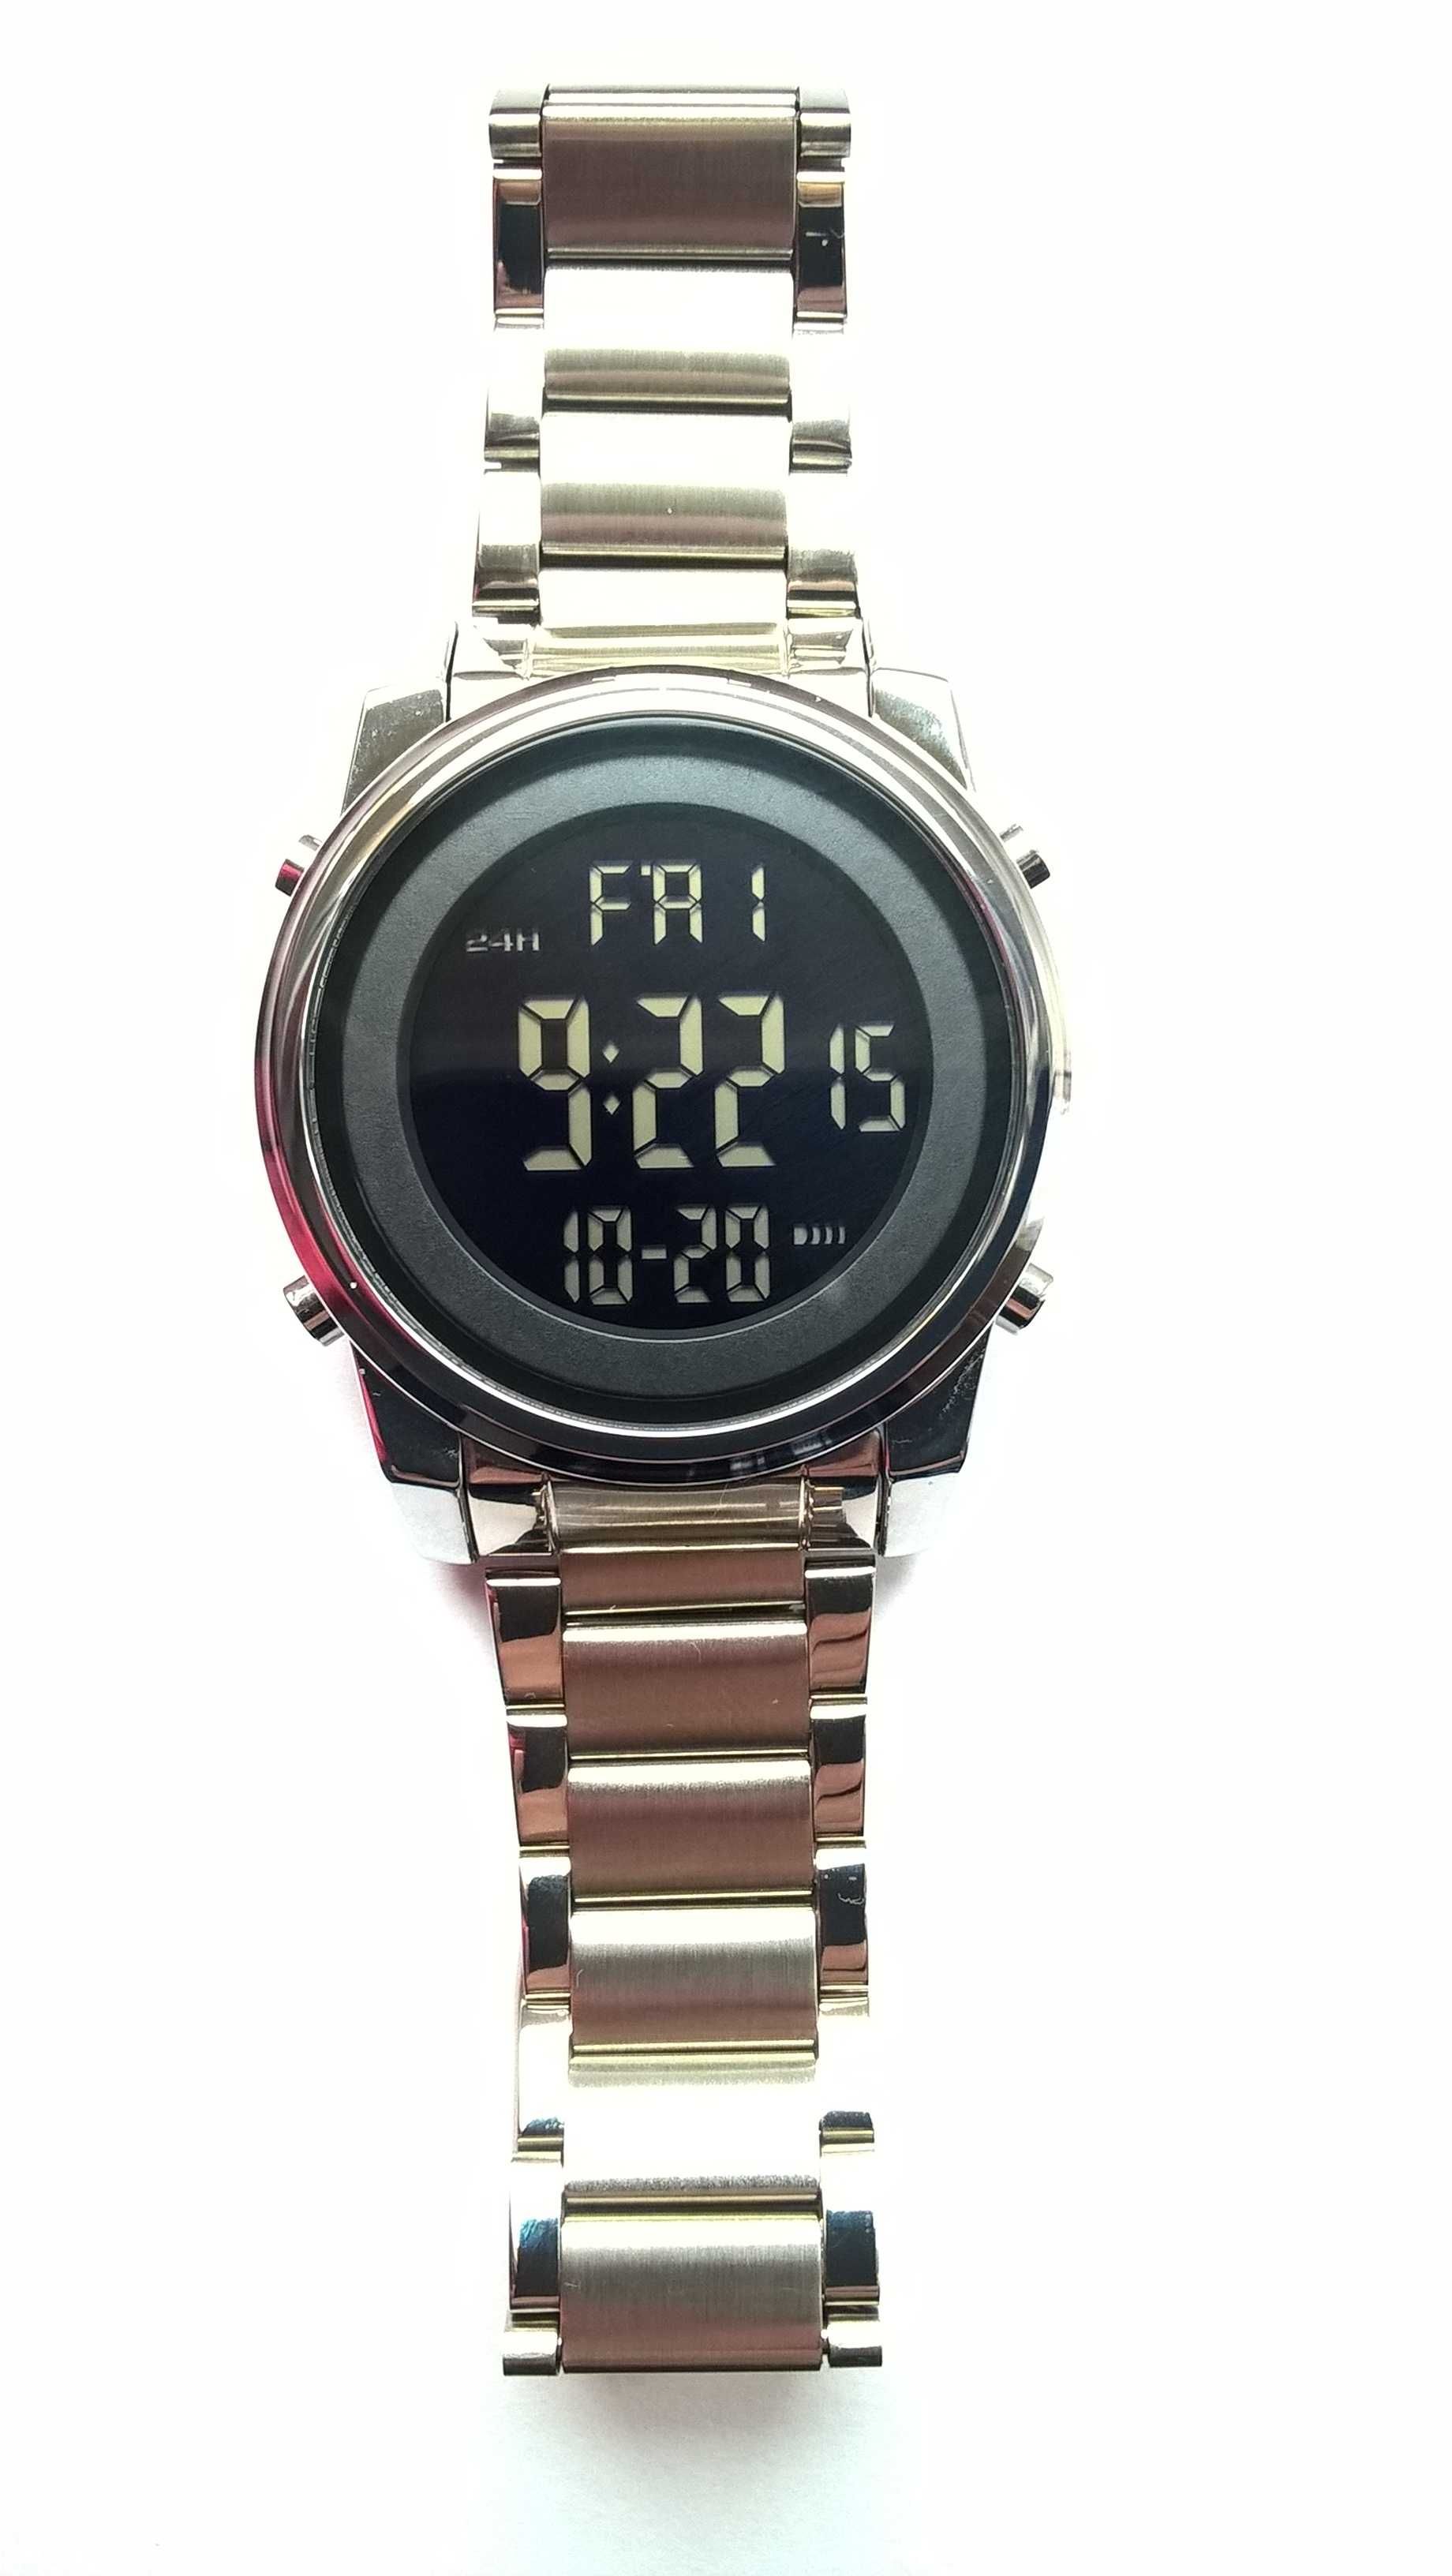 Zegarek męski SKMEI cyfrowy elektroniczny w kolorze srebrnym , nowy